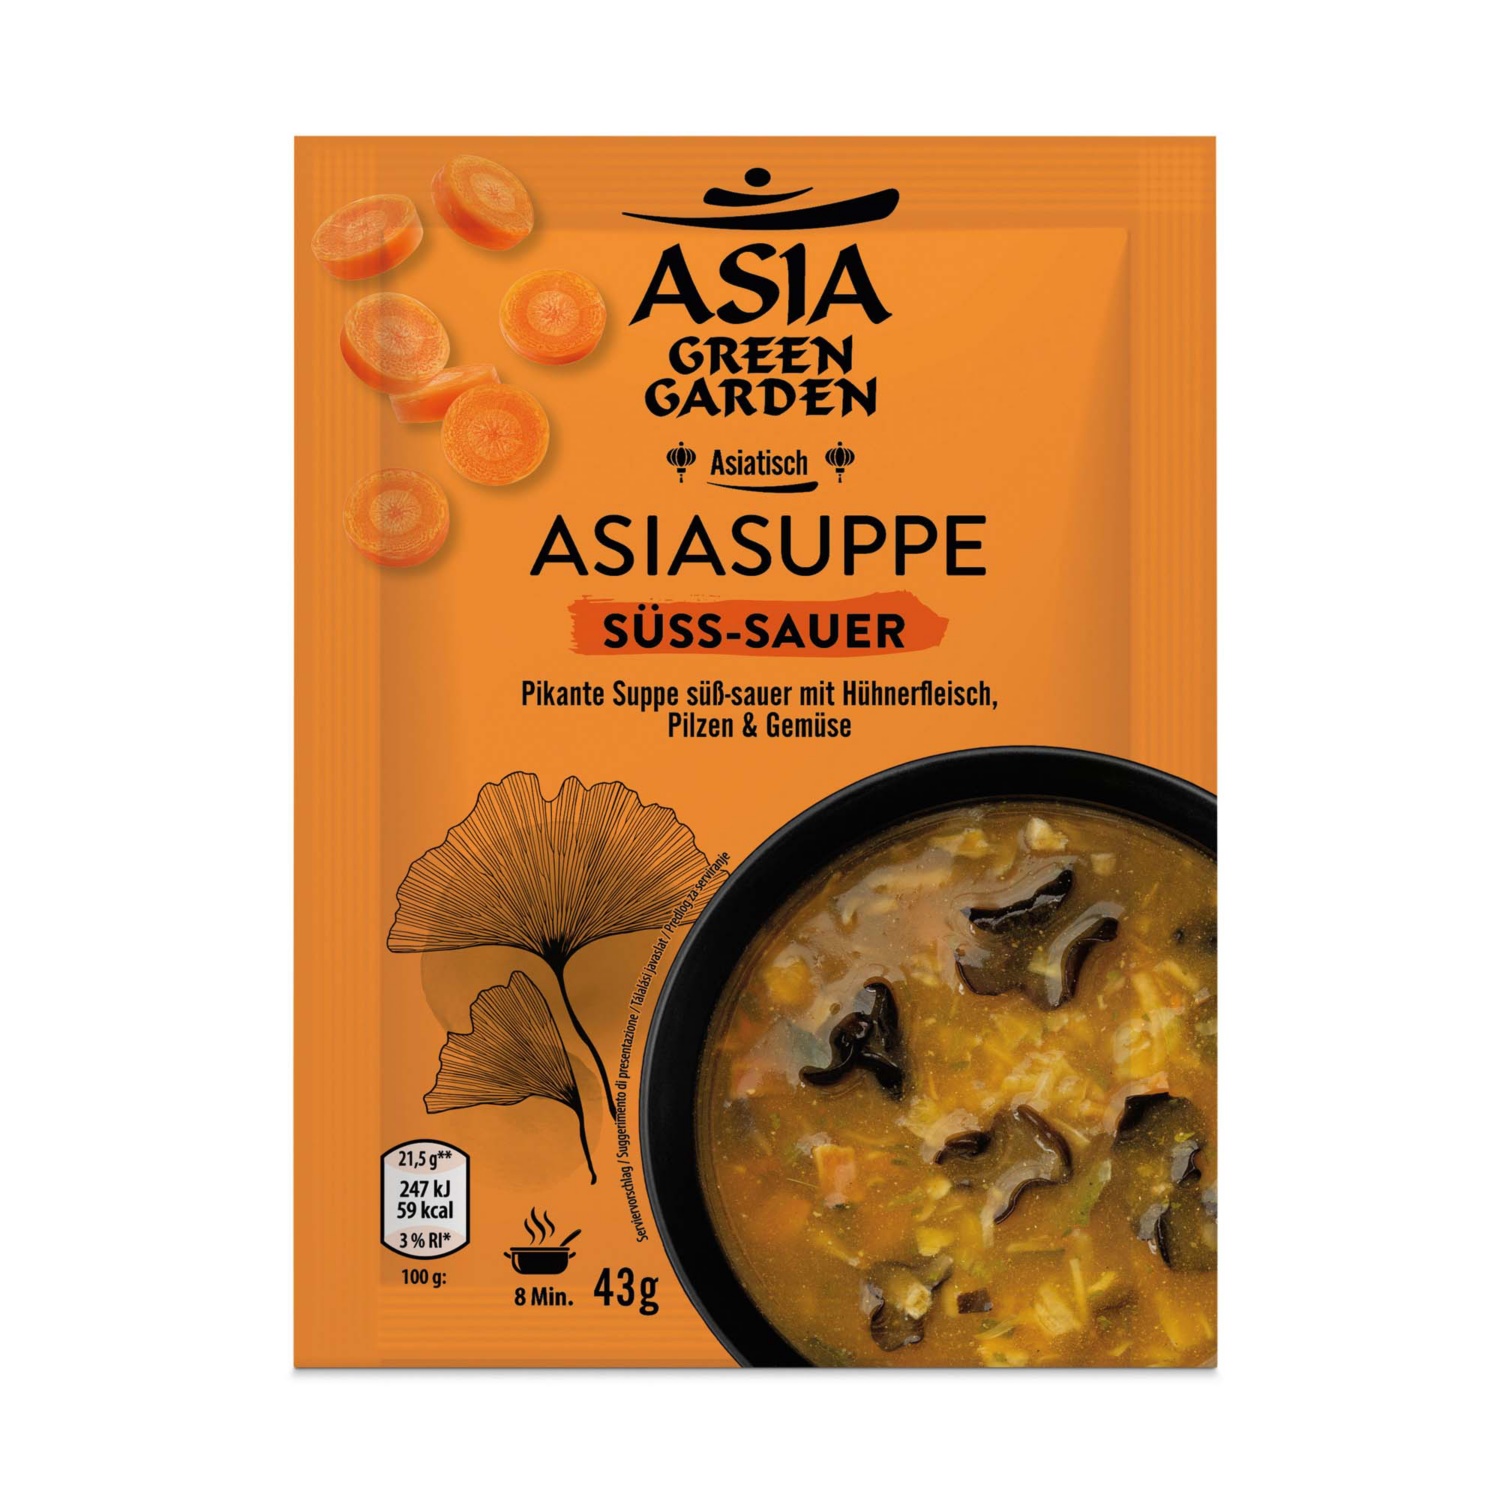 ASIA GREEN GARDEN Asia Suppen, Süß/Sauer